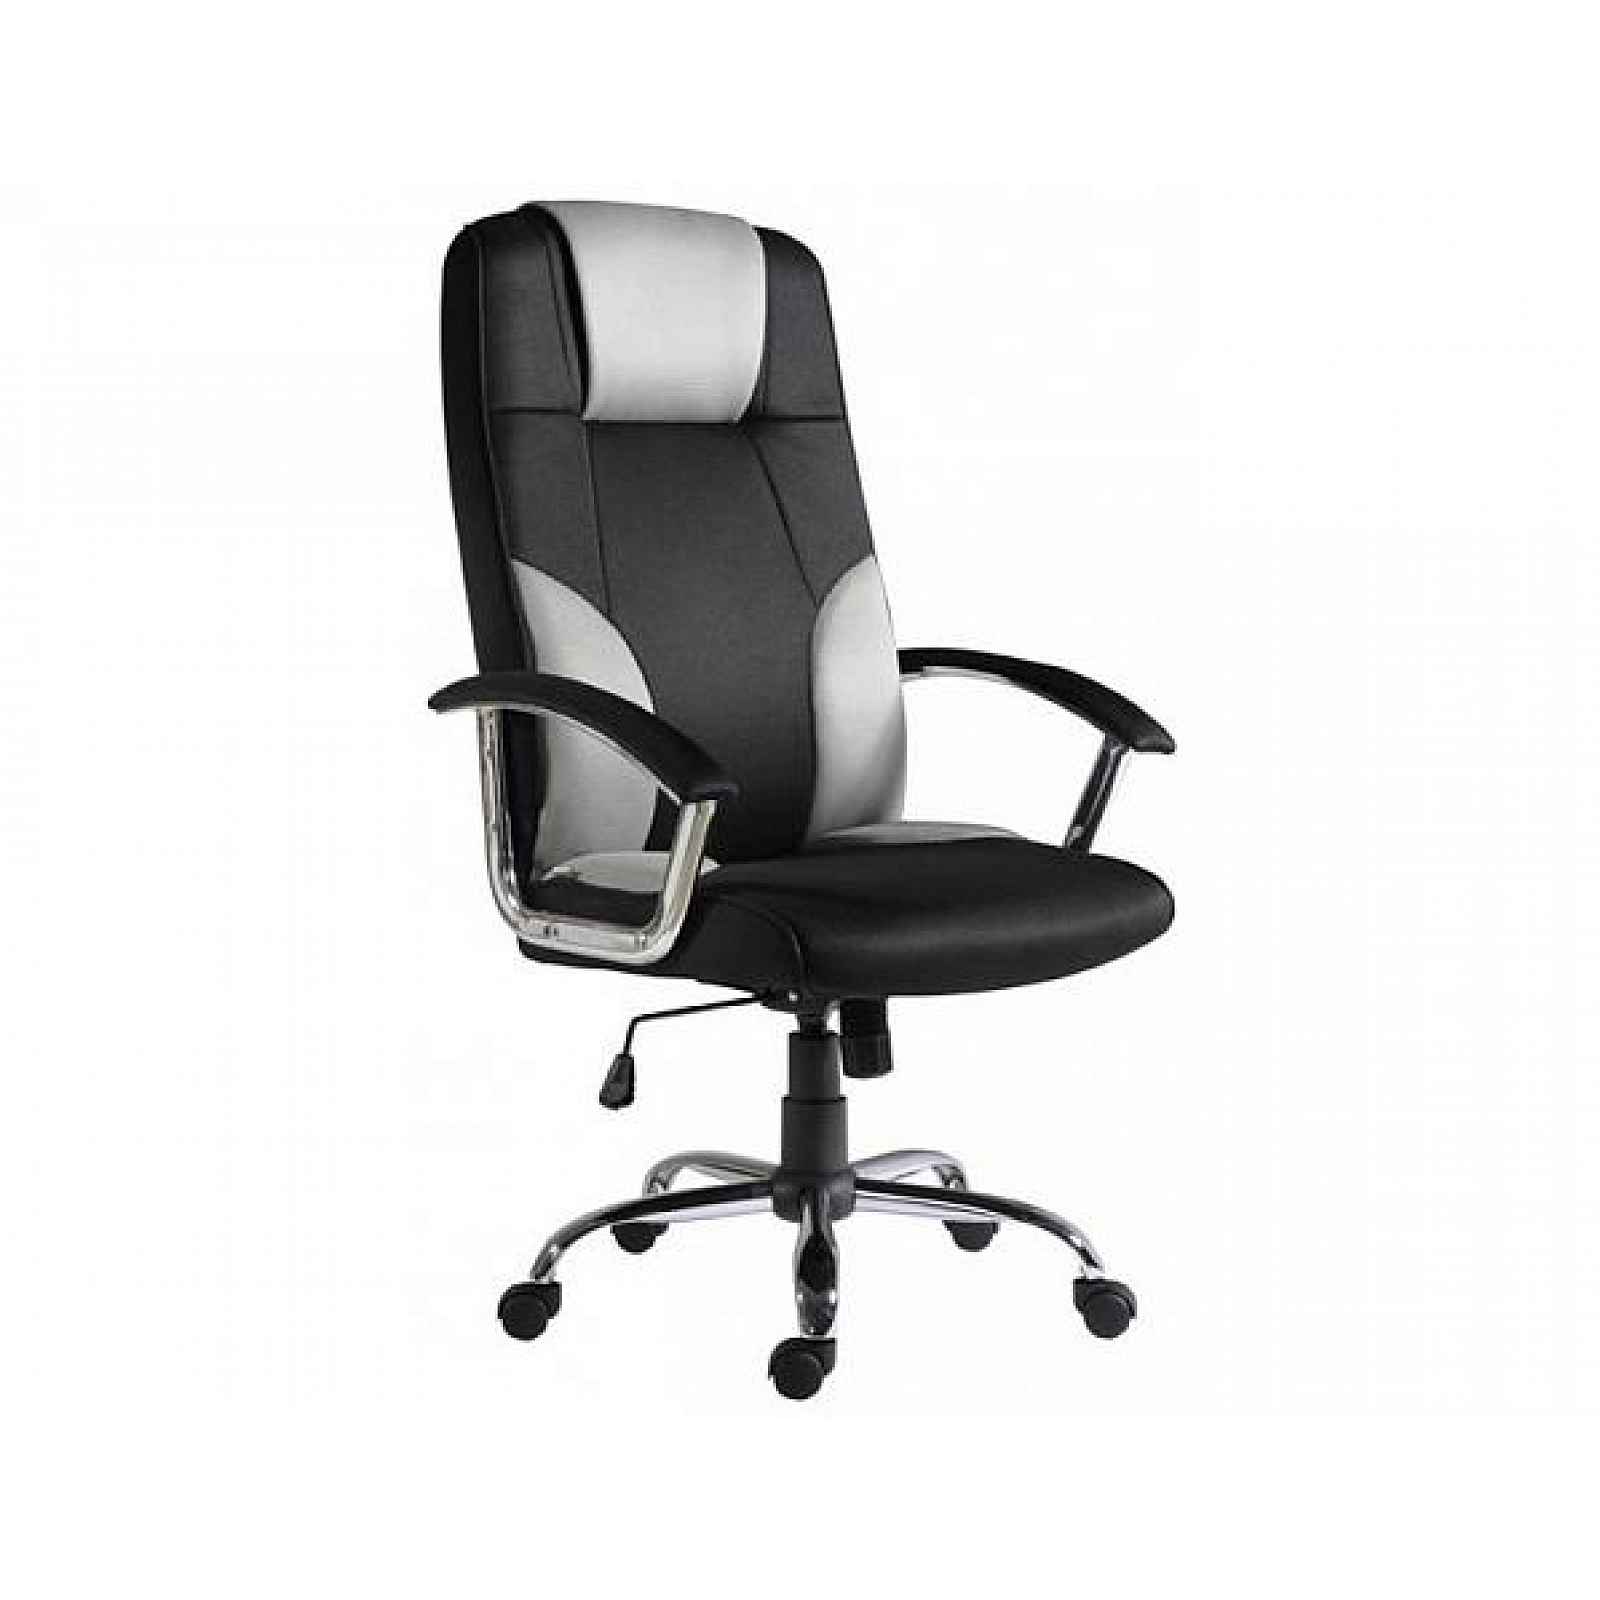 Kancelářská židle Miami šedo-černá, 66 cm